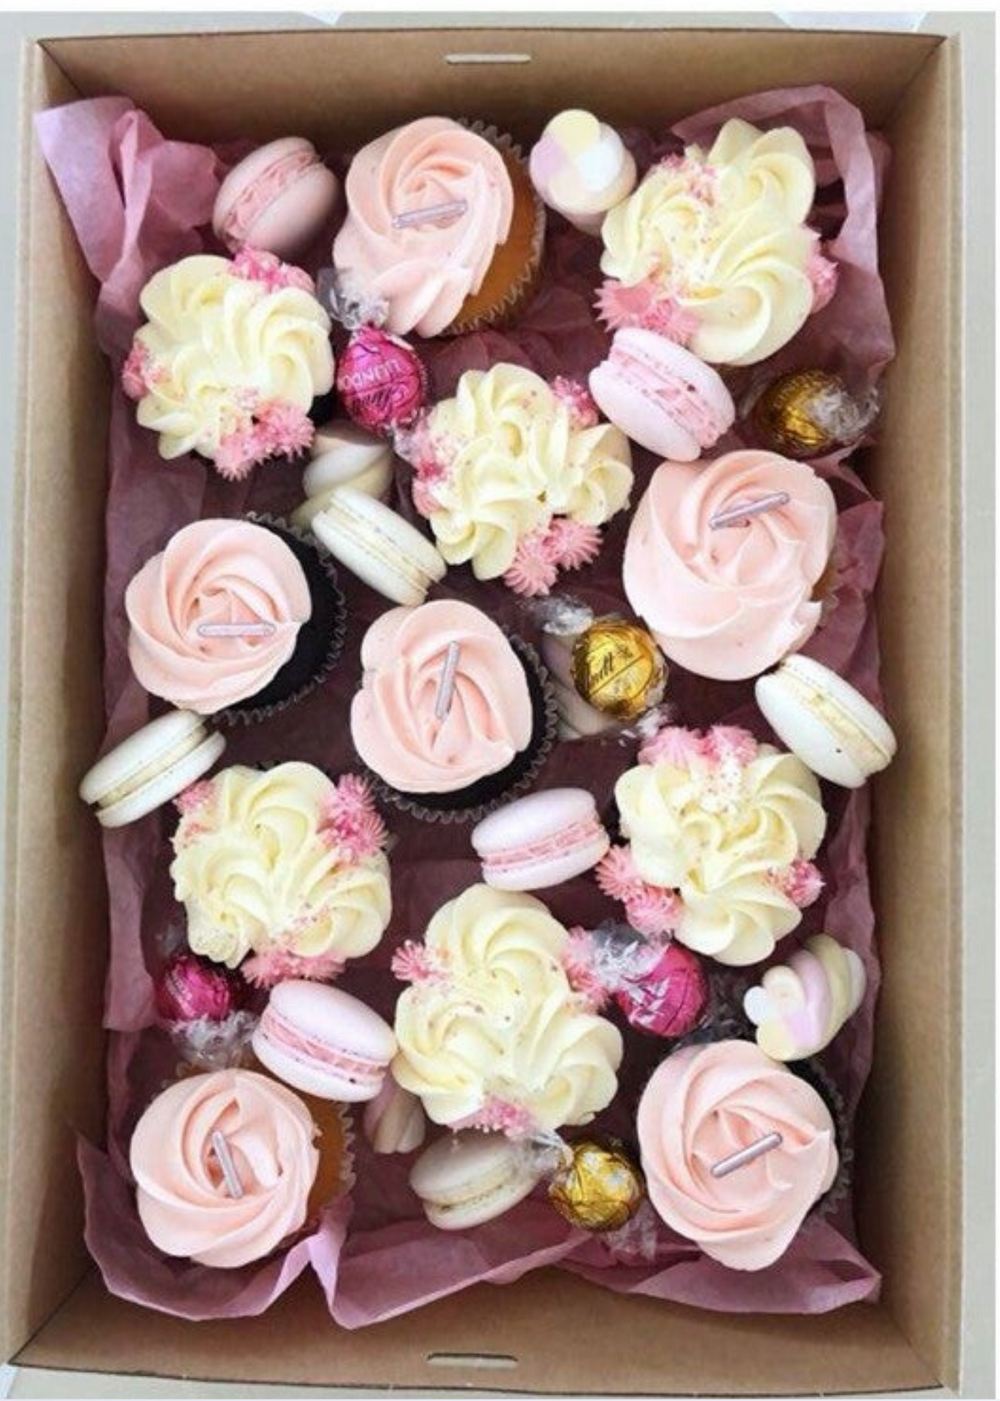 Cupcakes & macarons box